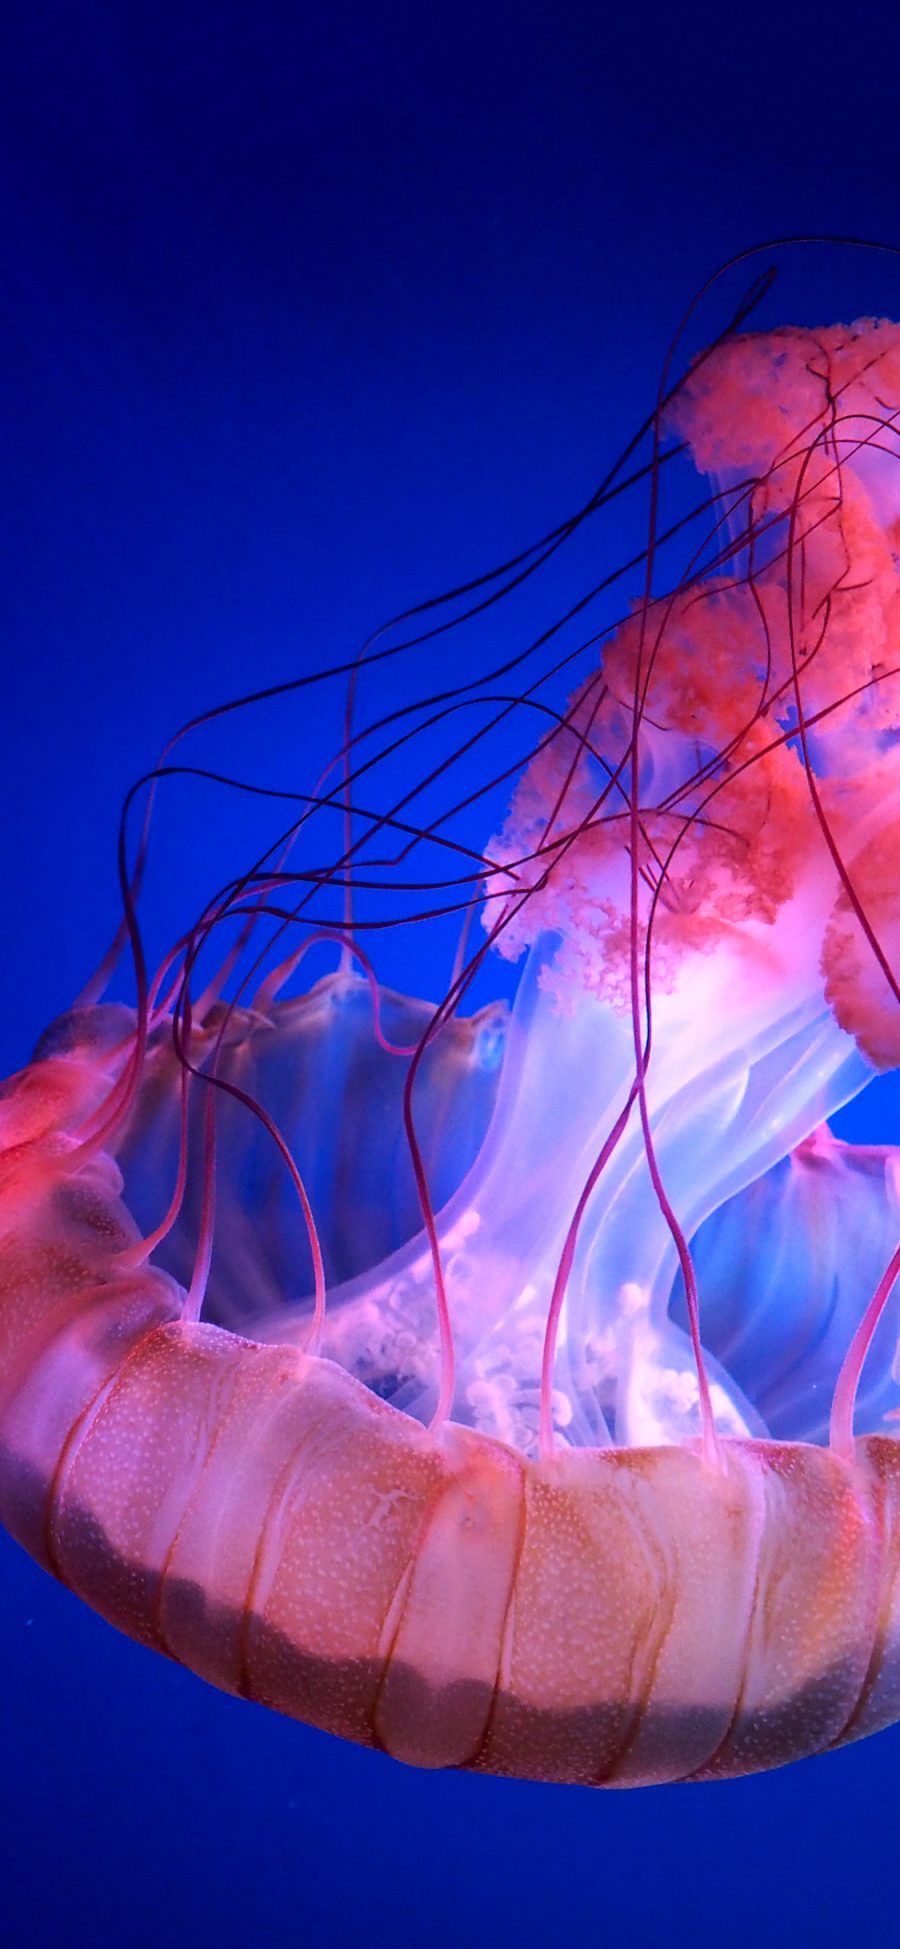 [2436×1125]水母 海洋生物 透明 游动 苹果手机壁纸图片